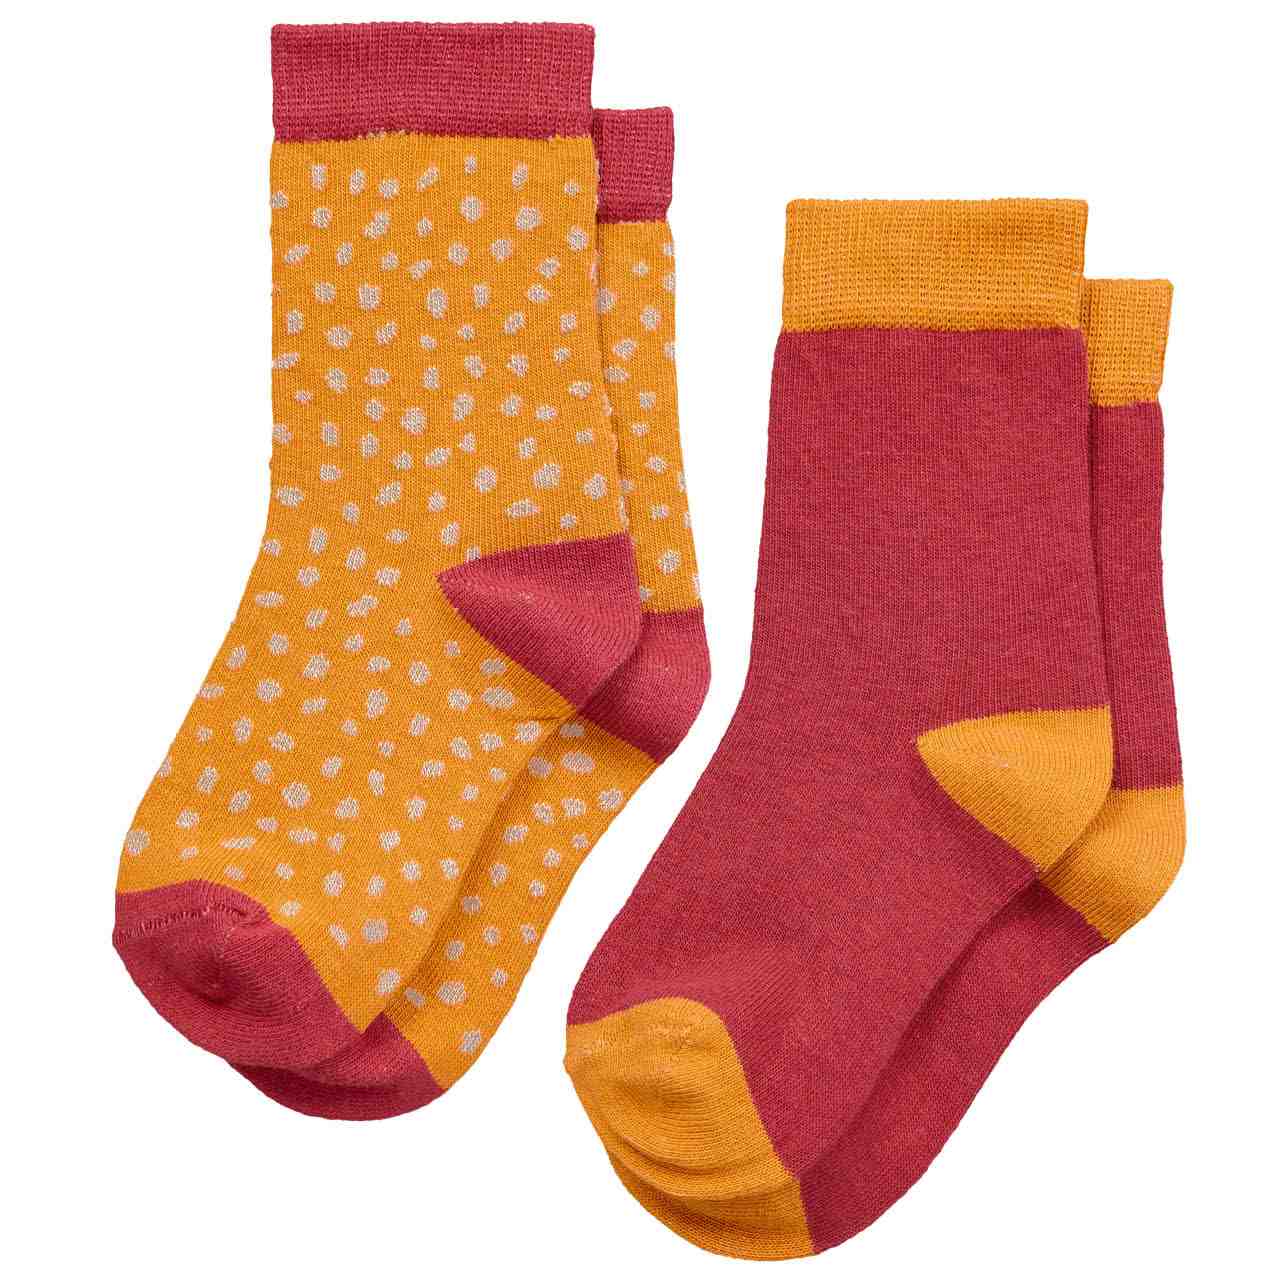 Kinder Socken 2er Pack Punkte gelb